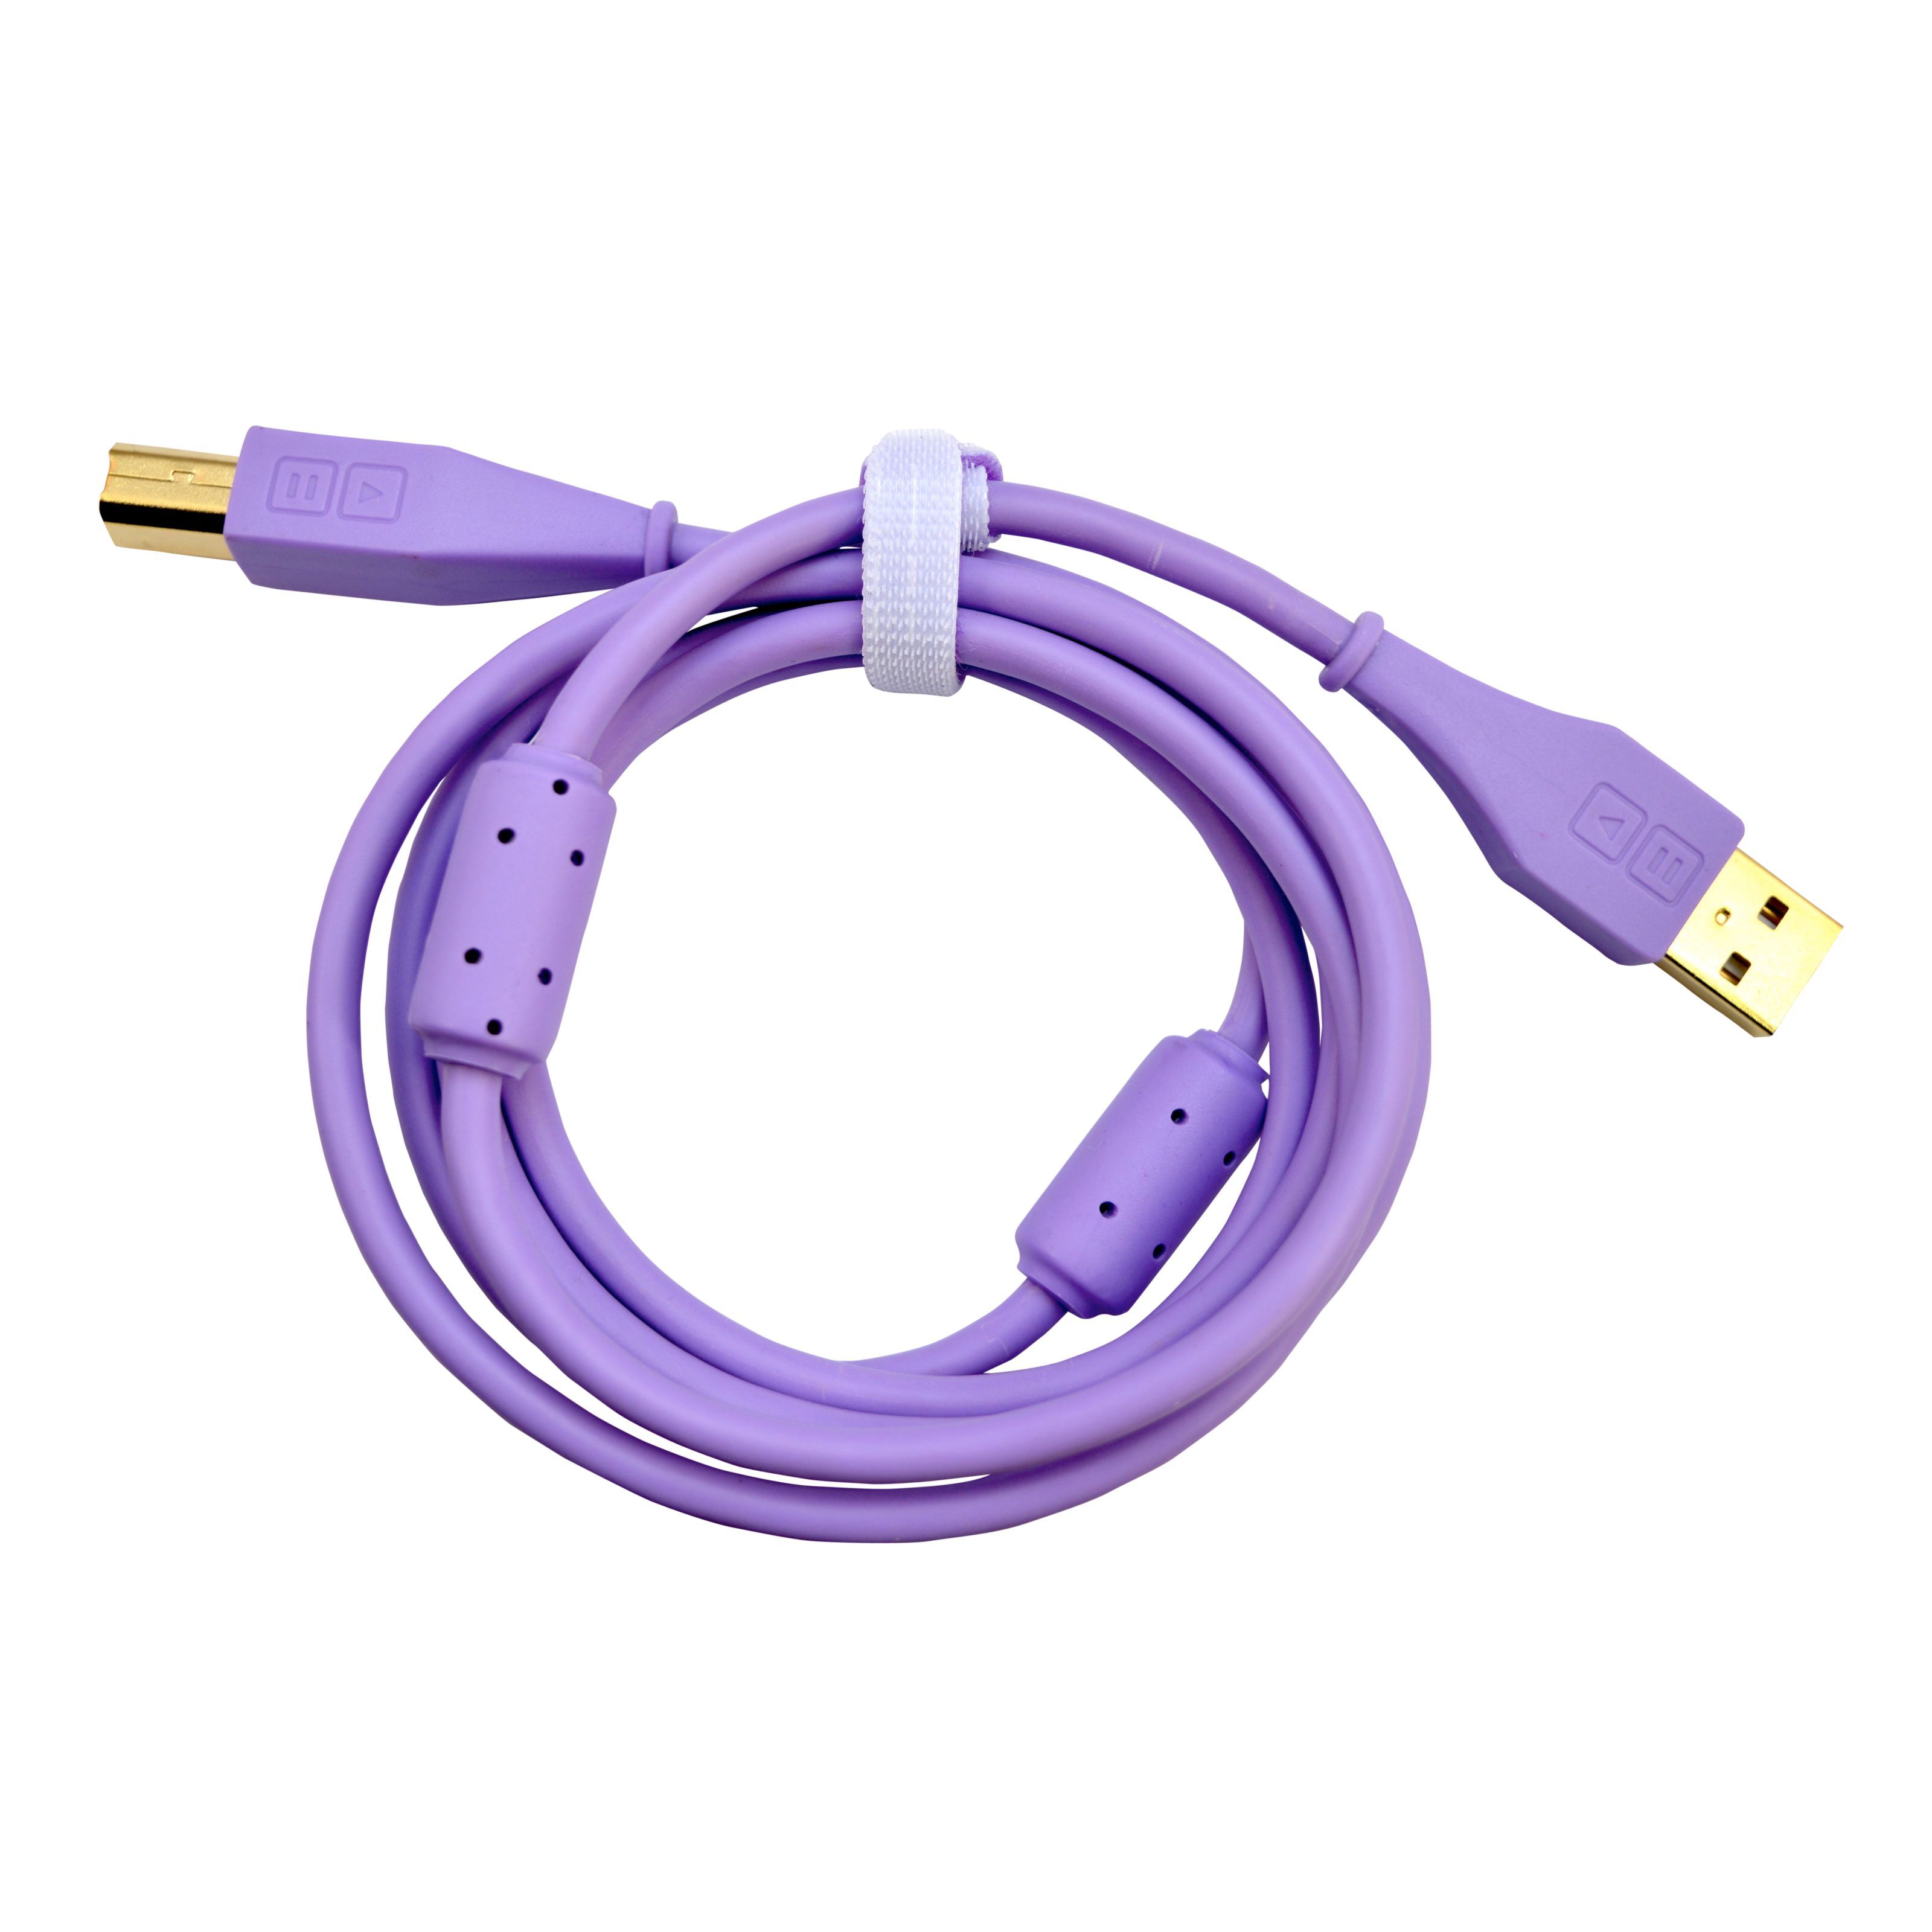 DJ TECHTOOLS DJTT USB Chroma Cable Purple 1,5m, gerader Stecker - Kabel für DJs